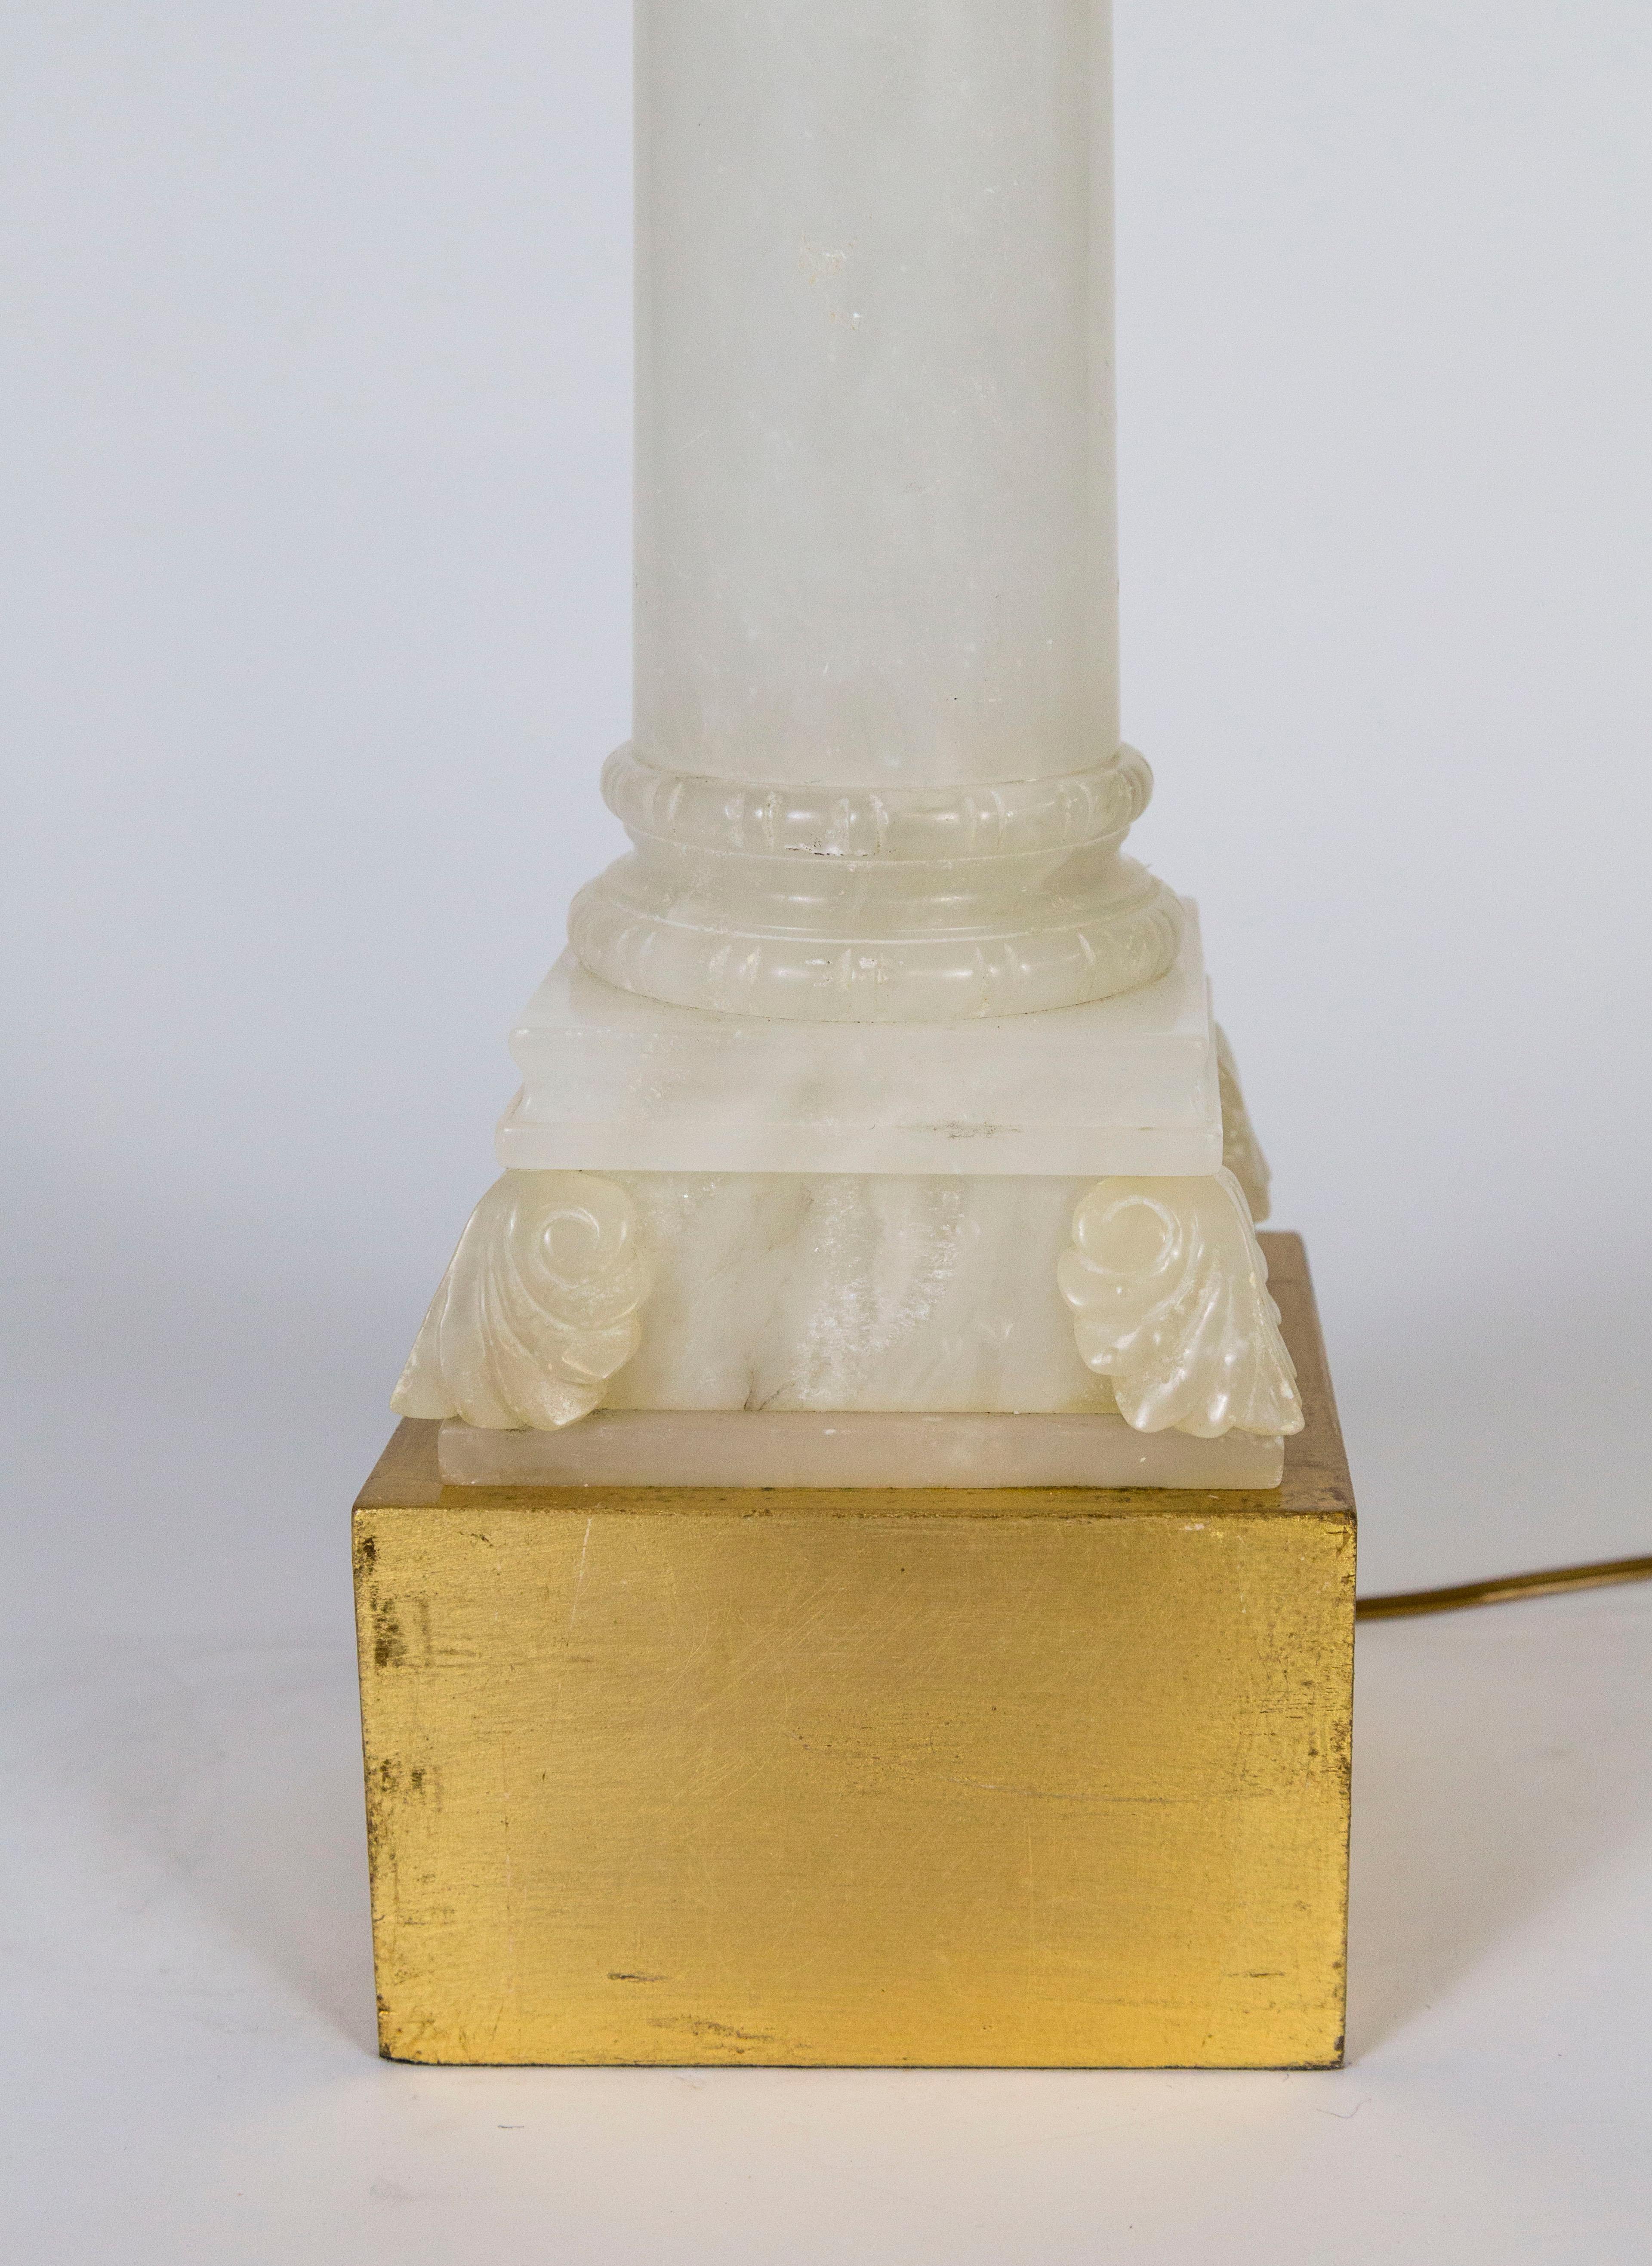 Magnifique lampe en albâtre poli en forme de colonne avec un chapiteau orné d'une feuille d'acanthe. La base et le col sont surélevés, carrés et dorés. Mesures : 30